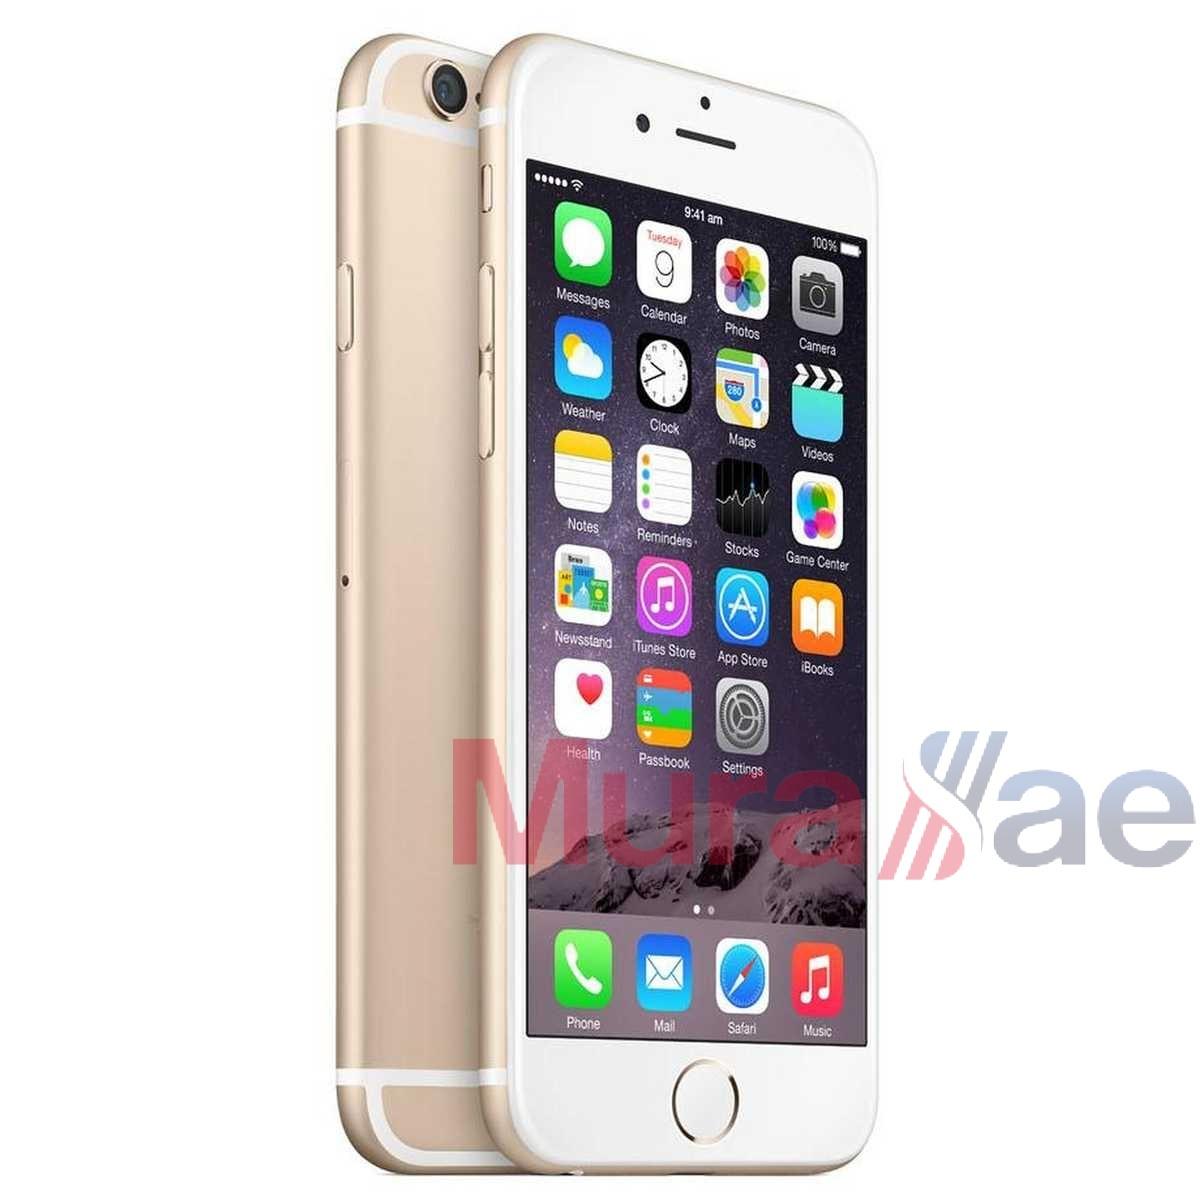 Apple iPhone 6 Plus 16GB Smartphone - Gold